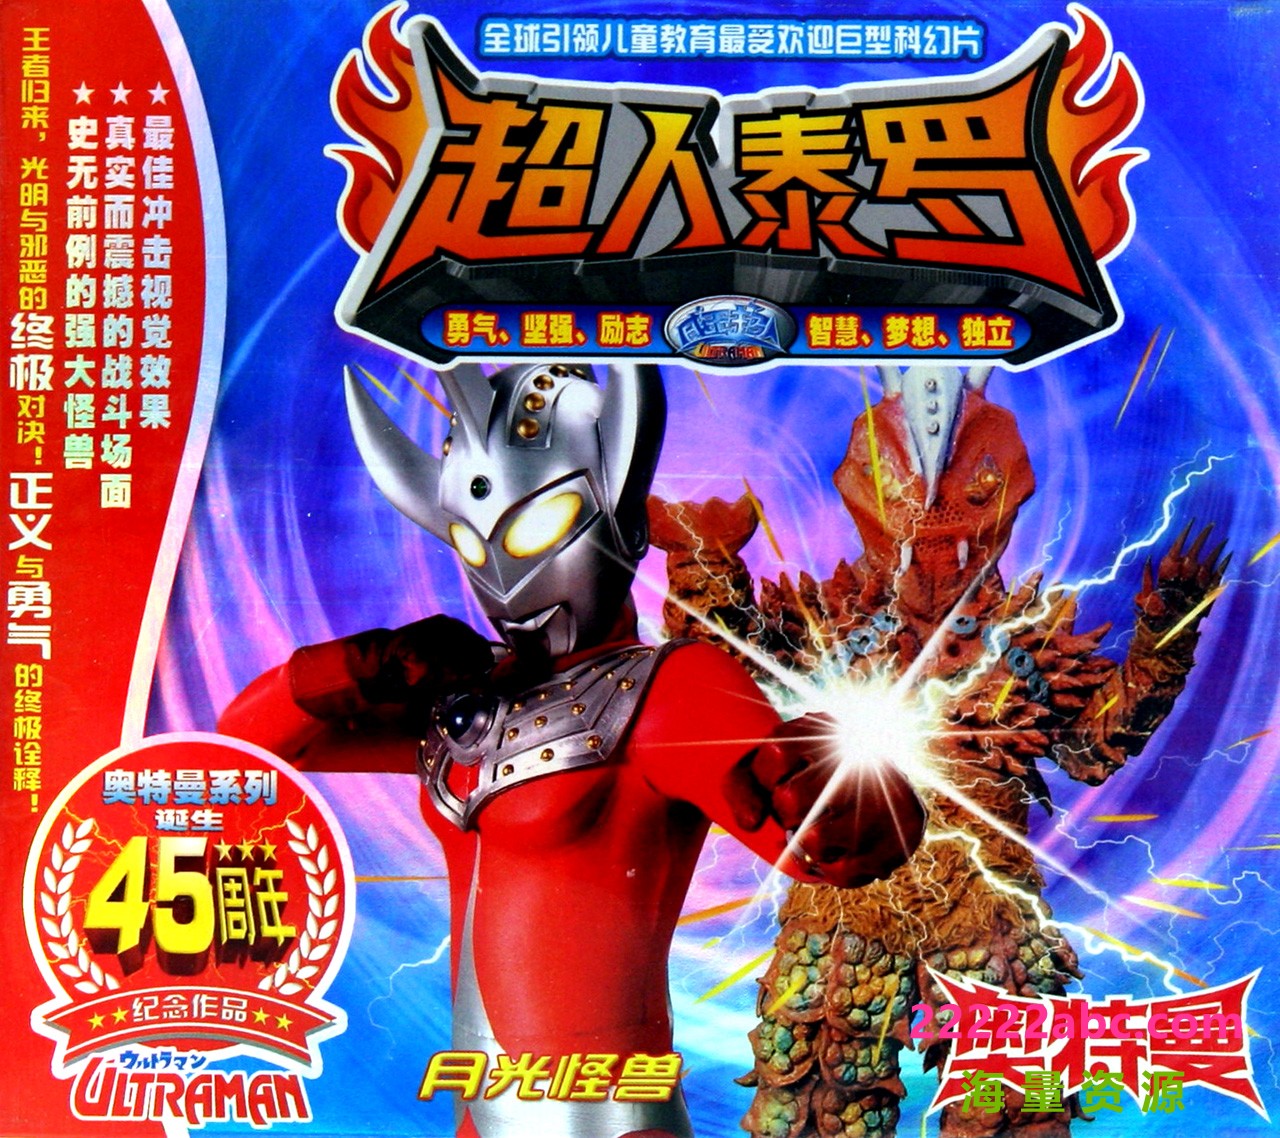 日本科幻特摄剧《Ultraman Taro 泰罗·奥特曼》中文版全53集下载 mp4/1080p/国语中字